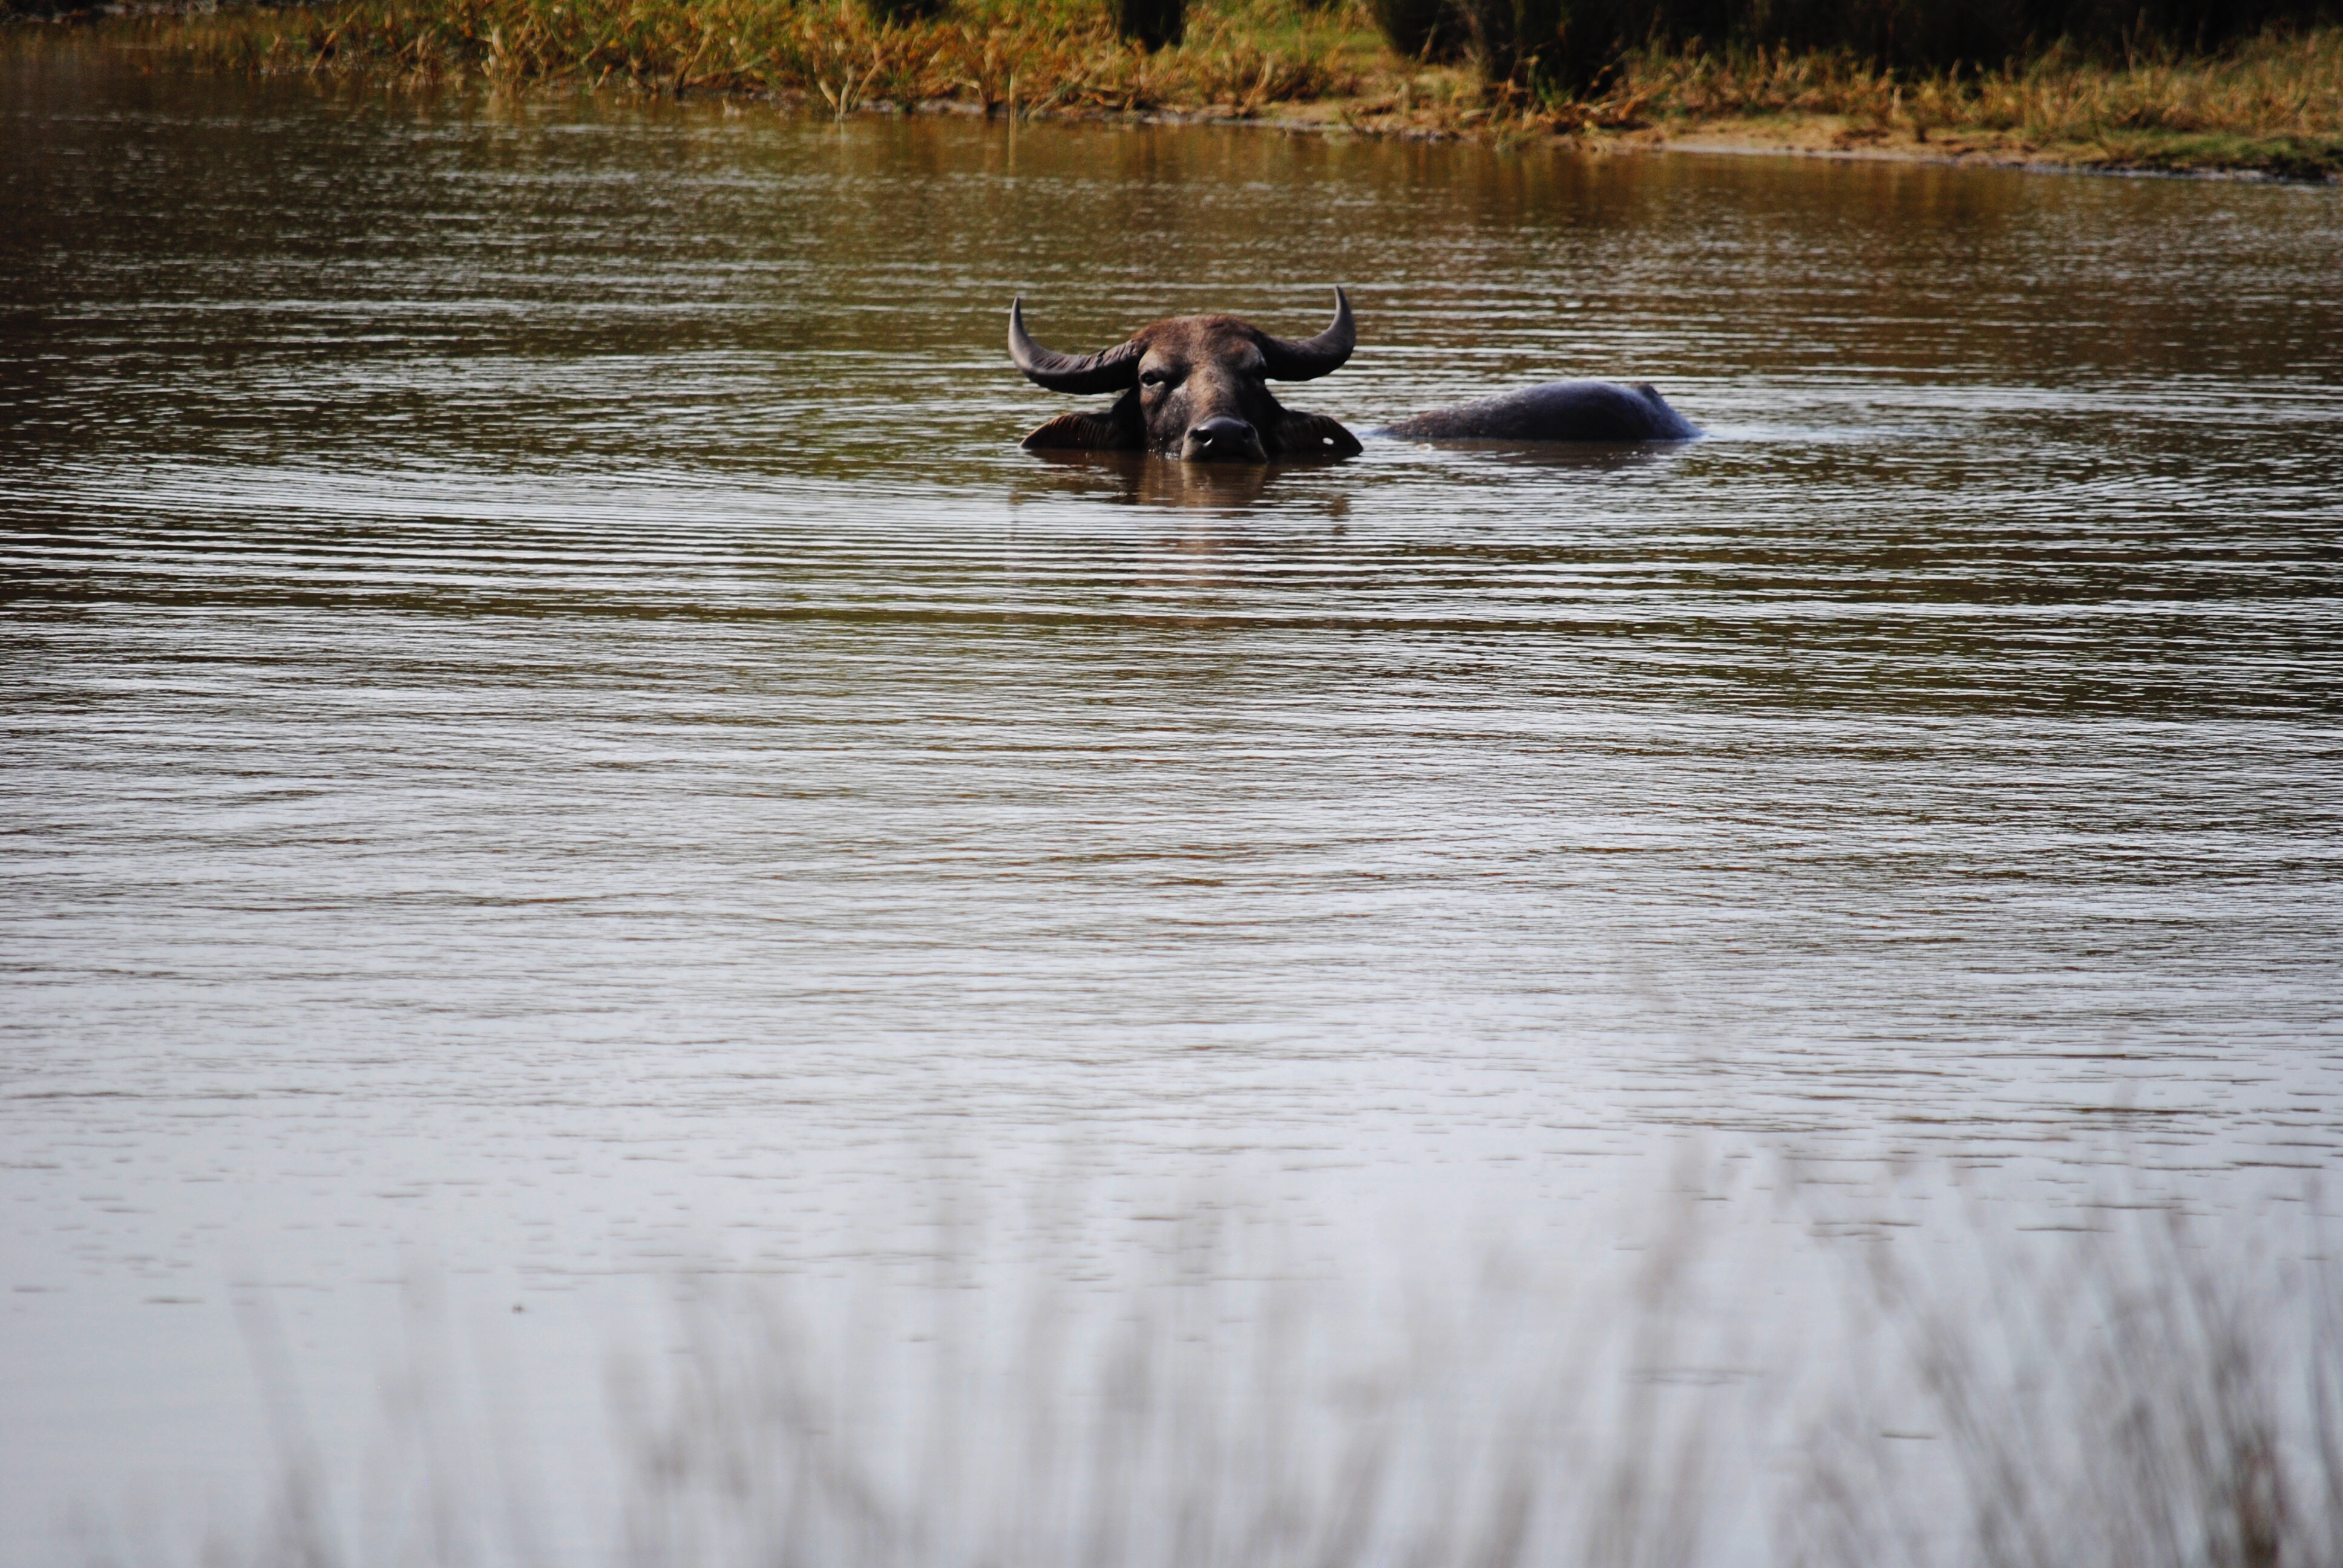 Water Buffalo in Sri Lanka, National Park